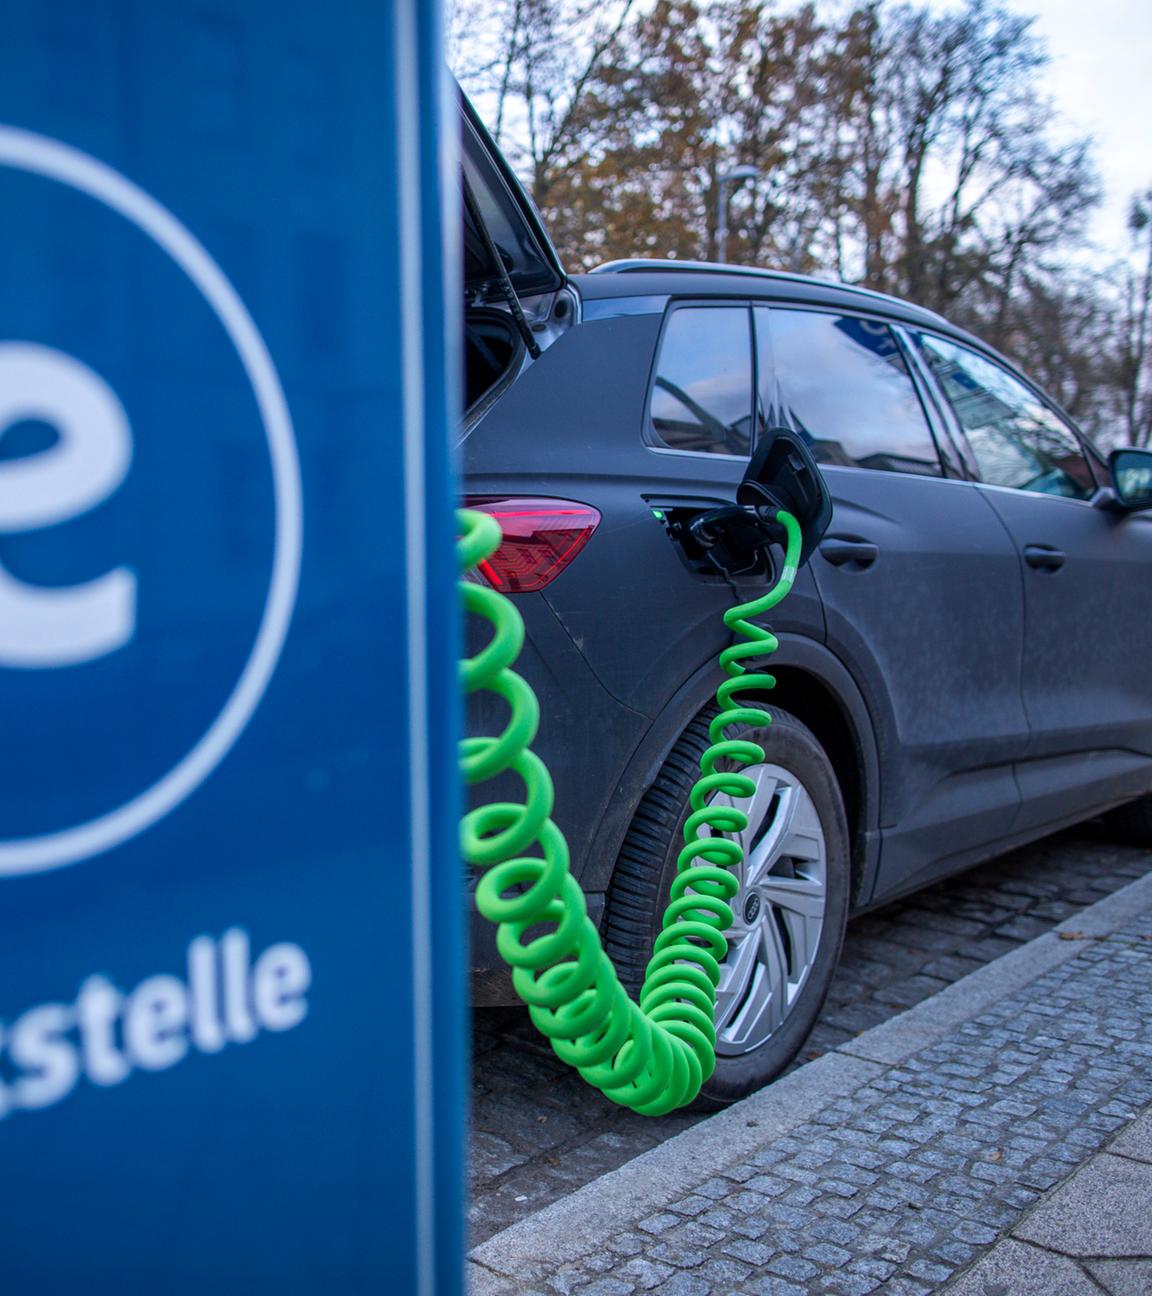 Mecklenburg-Vorpommern, Schwerin: An der Ladesäule eines regionalen Stromanbieters wird ein Elektroauto mit Strom aufgeladen.